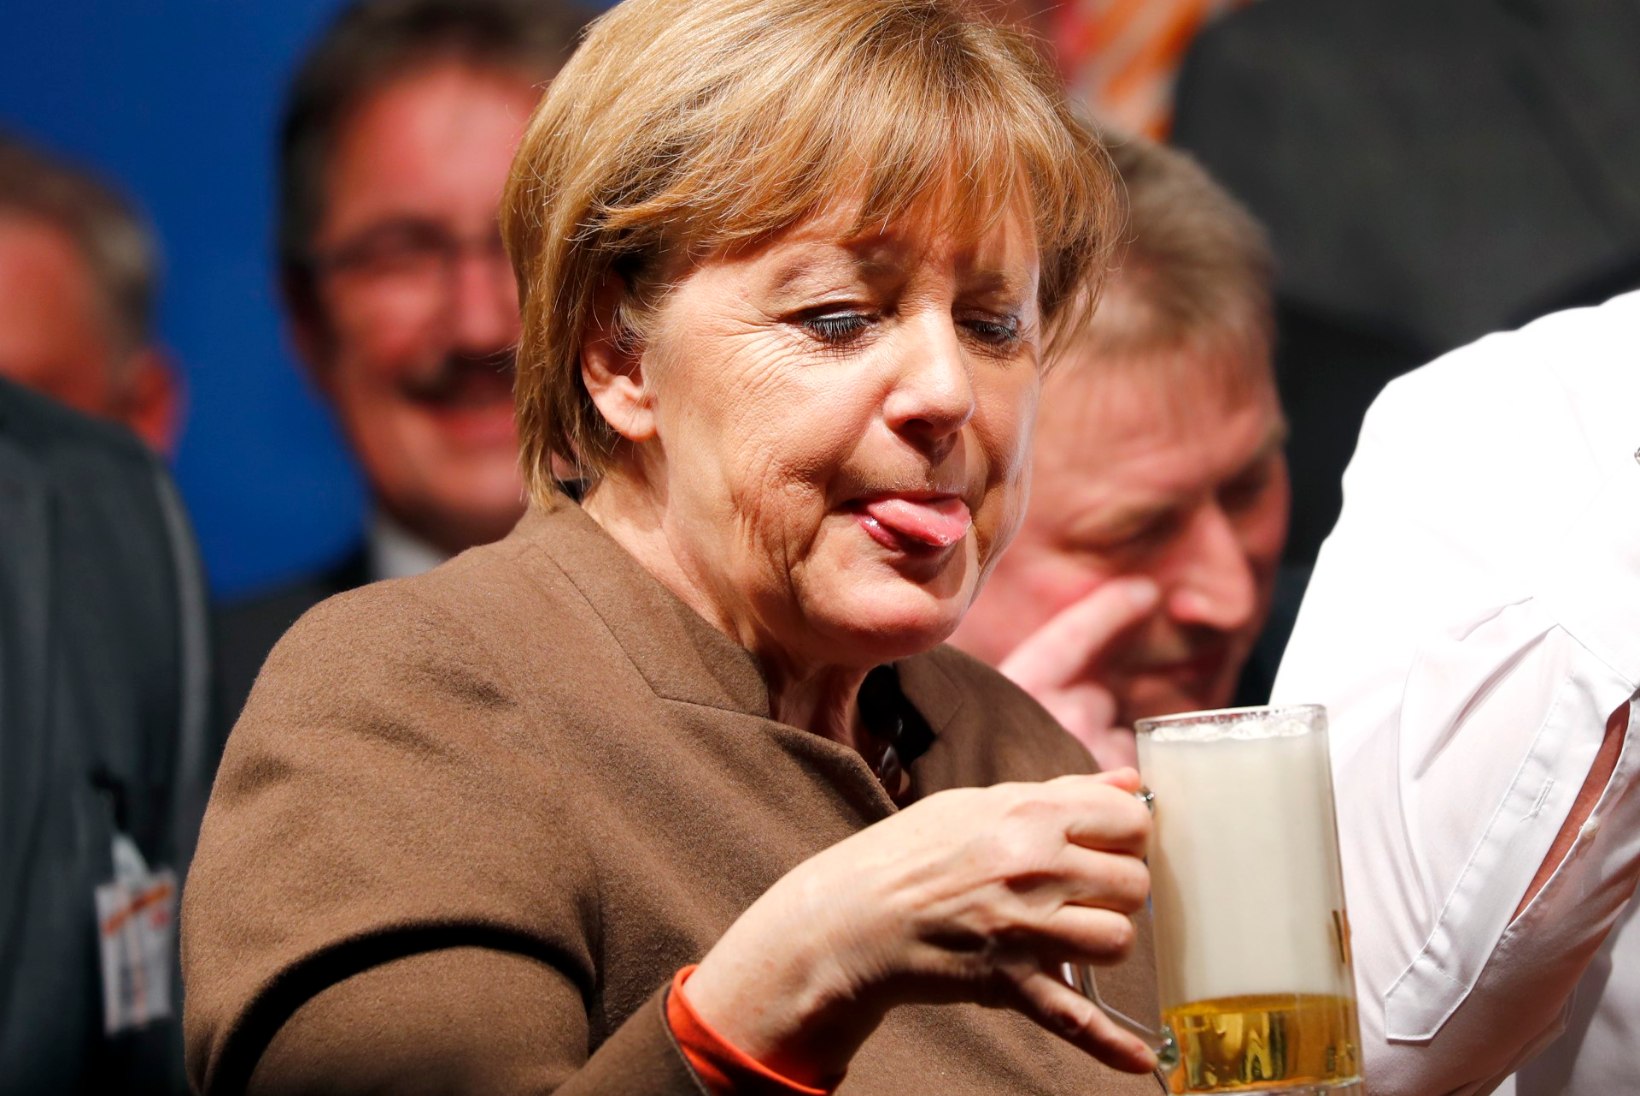 Millist Eesti õlut Merkelile pakkuda?